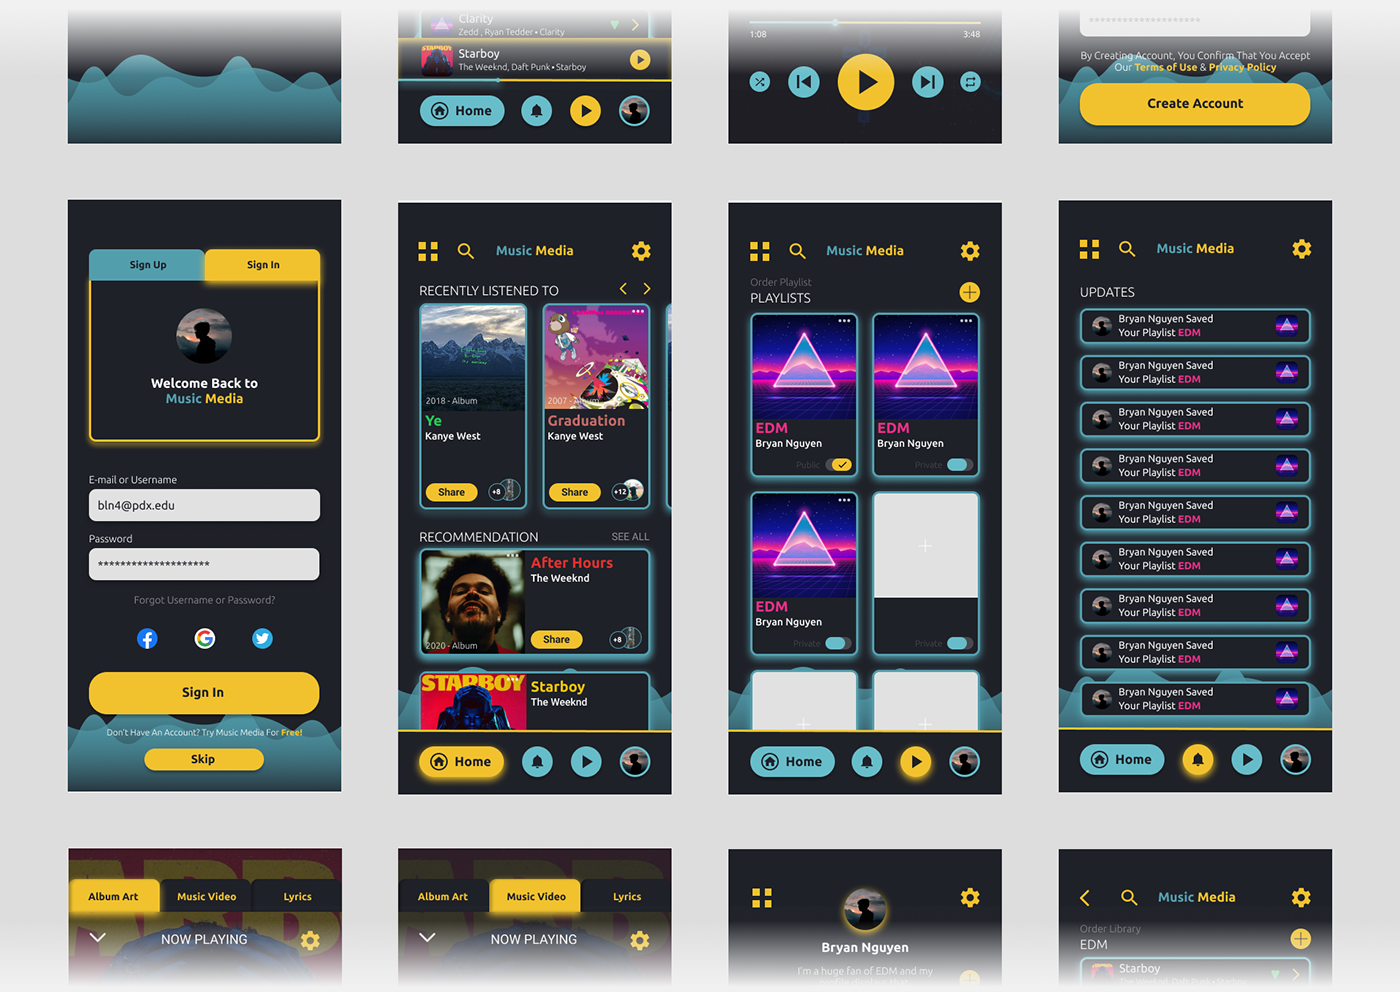 app design design Figma Interface mobile Mobile app ui design UI/UX user experience user interface